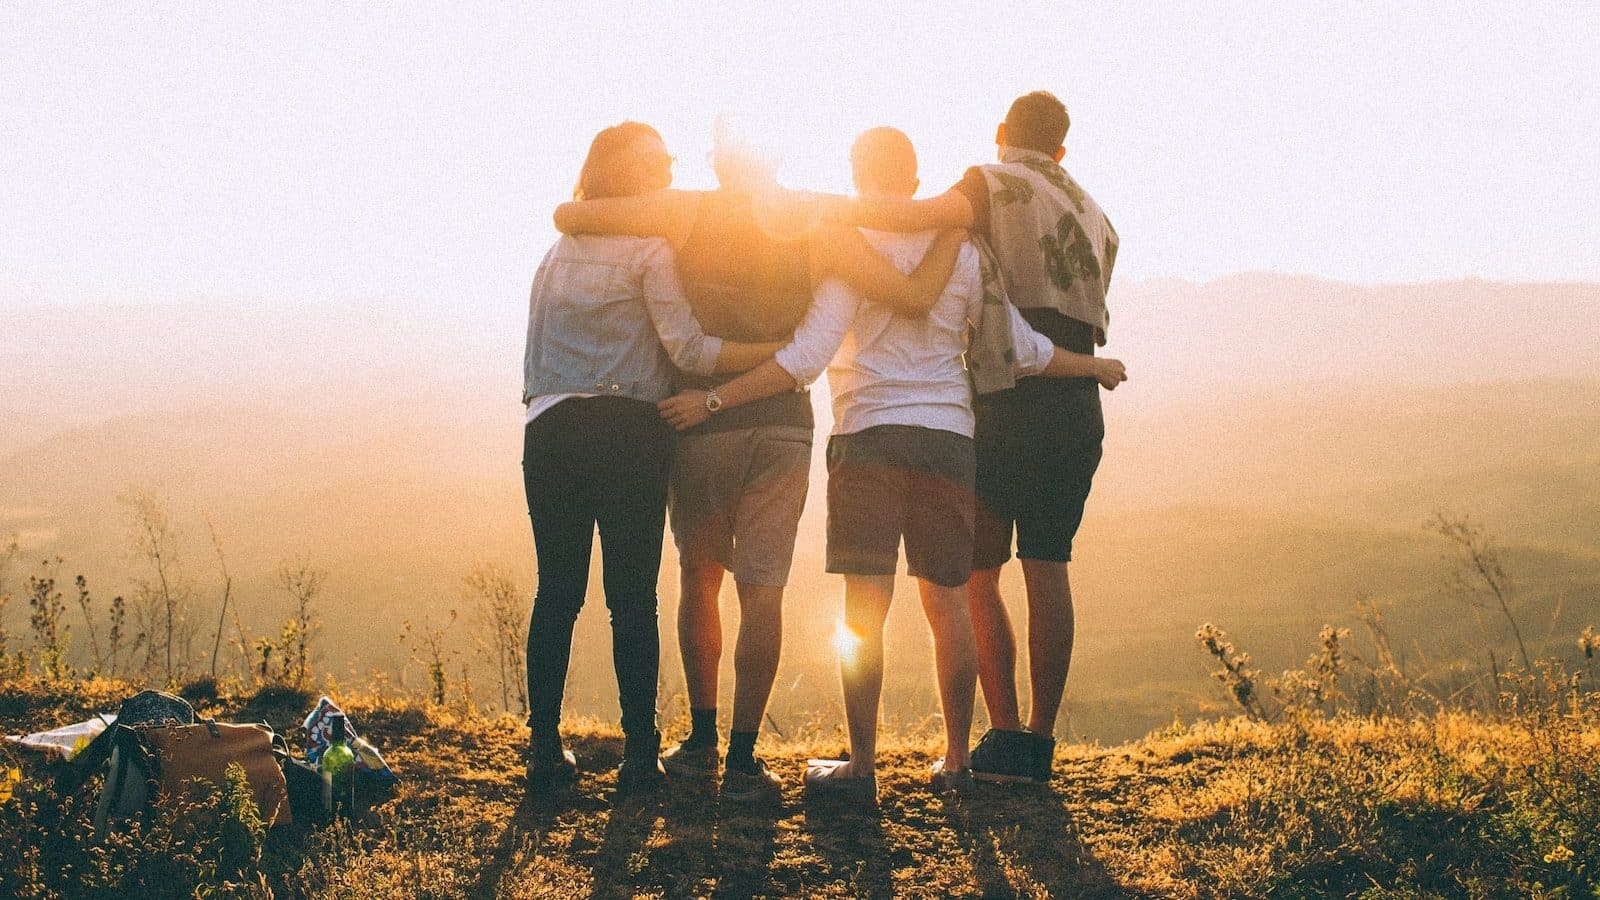 fyra personers händer om varandras axlar medan de ser på solnedgången, symboliserar gemenskap i att uppnå bättre lånevillkor